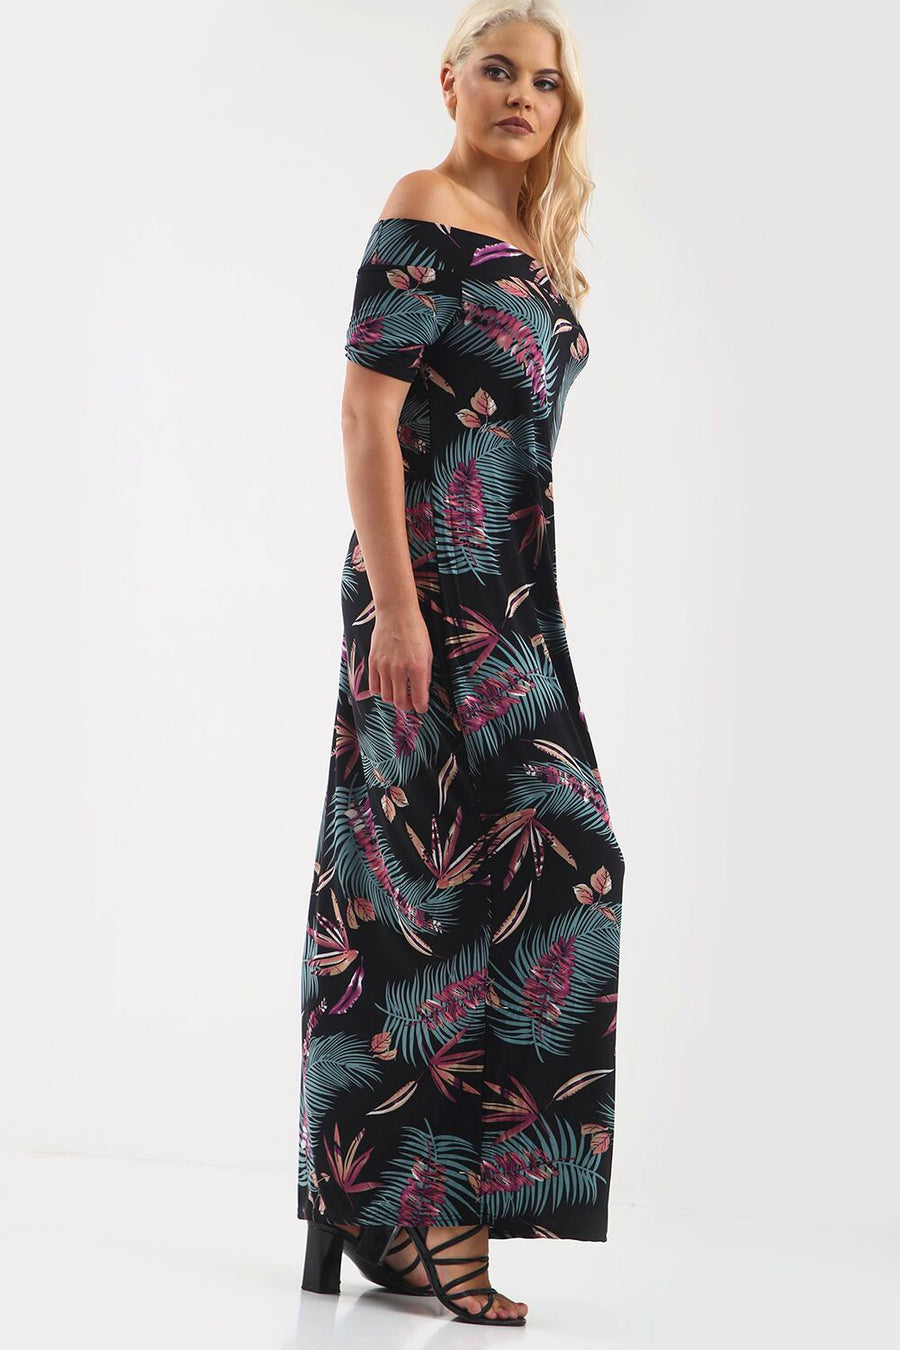 Off Shoulder Black Tropical Print Maxi Dress - bejealous-com